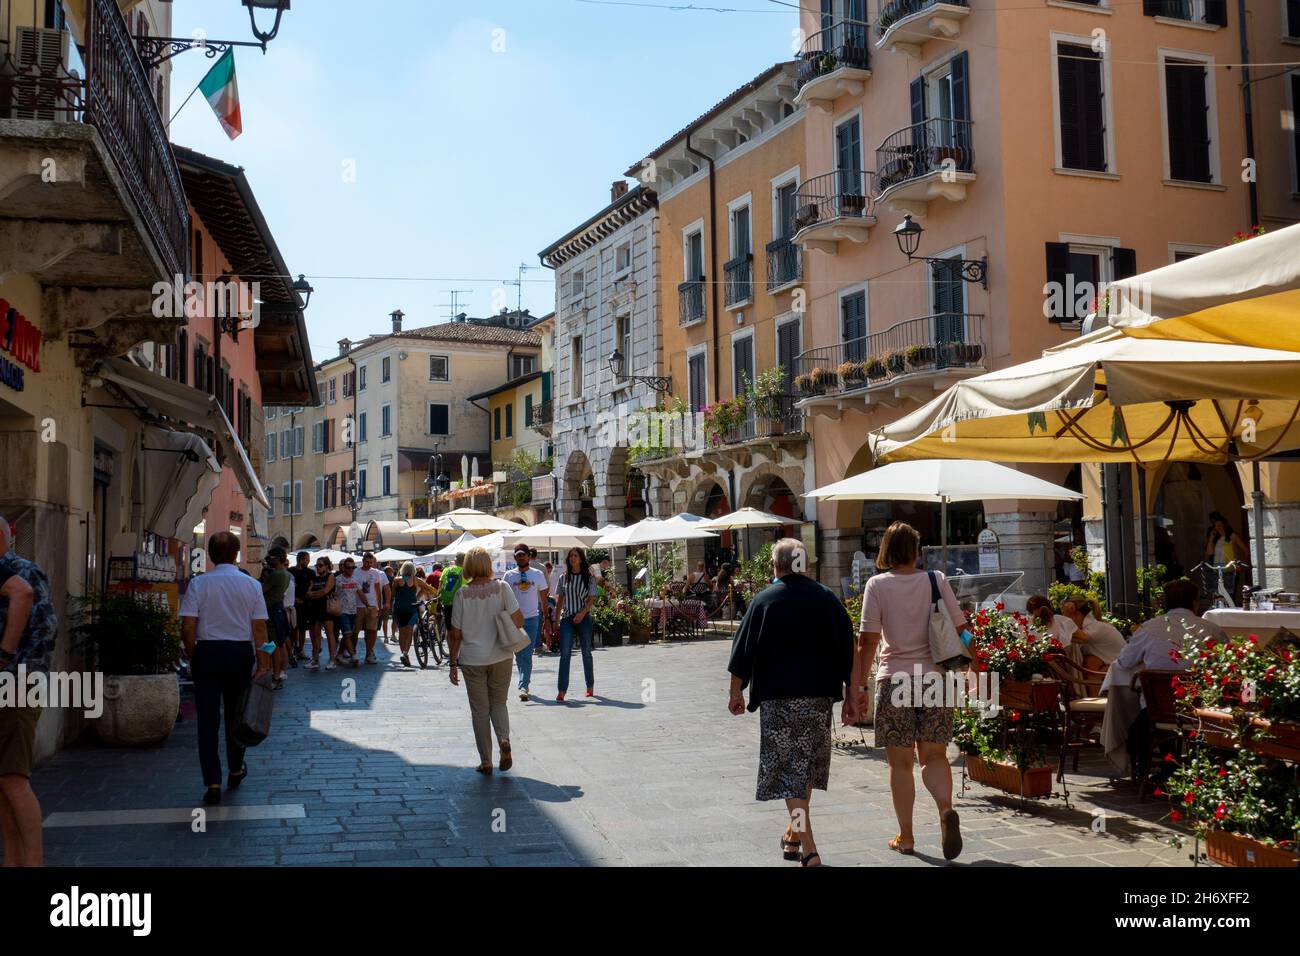 Belebte Altstadt von Desenzano am Gardasee Stock Photo